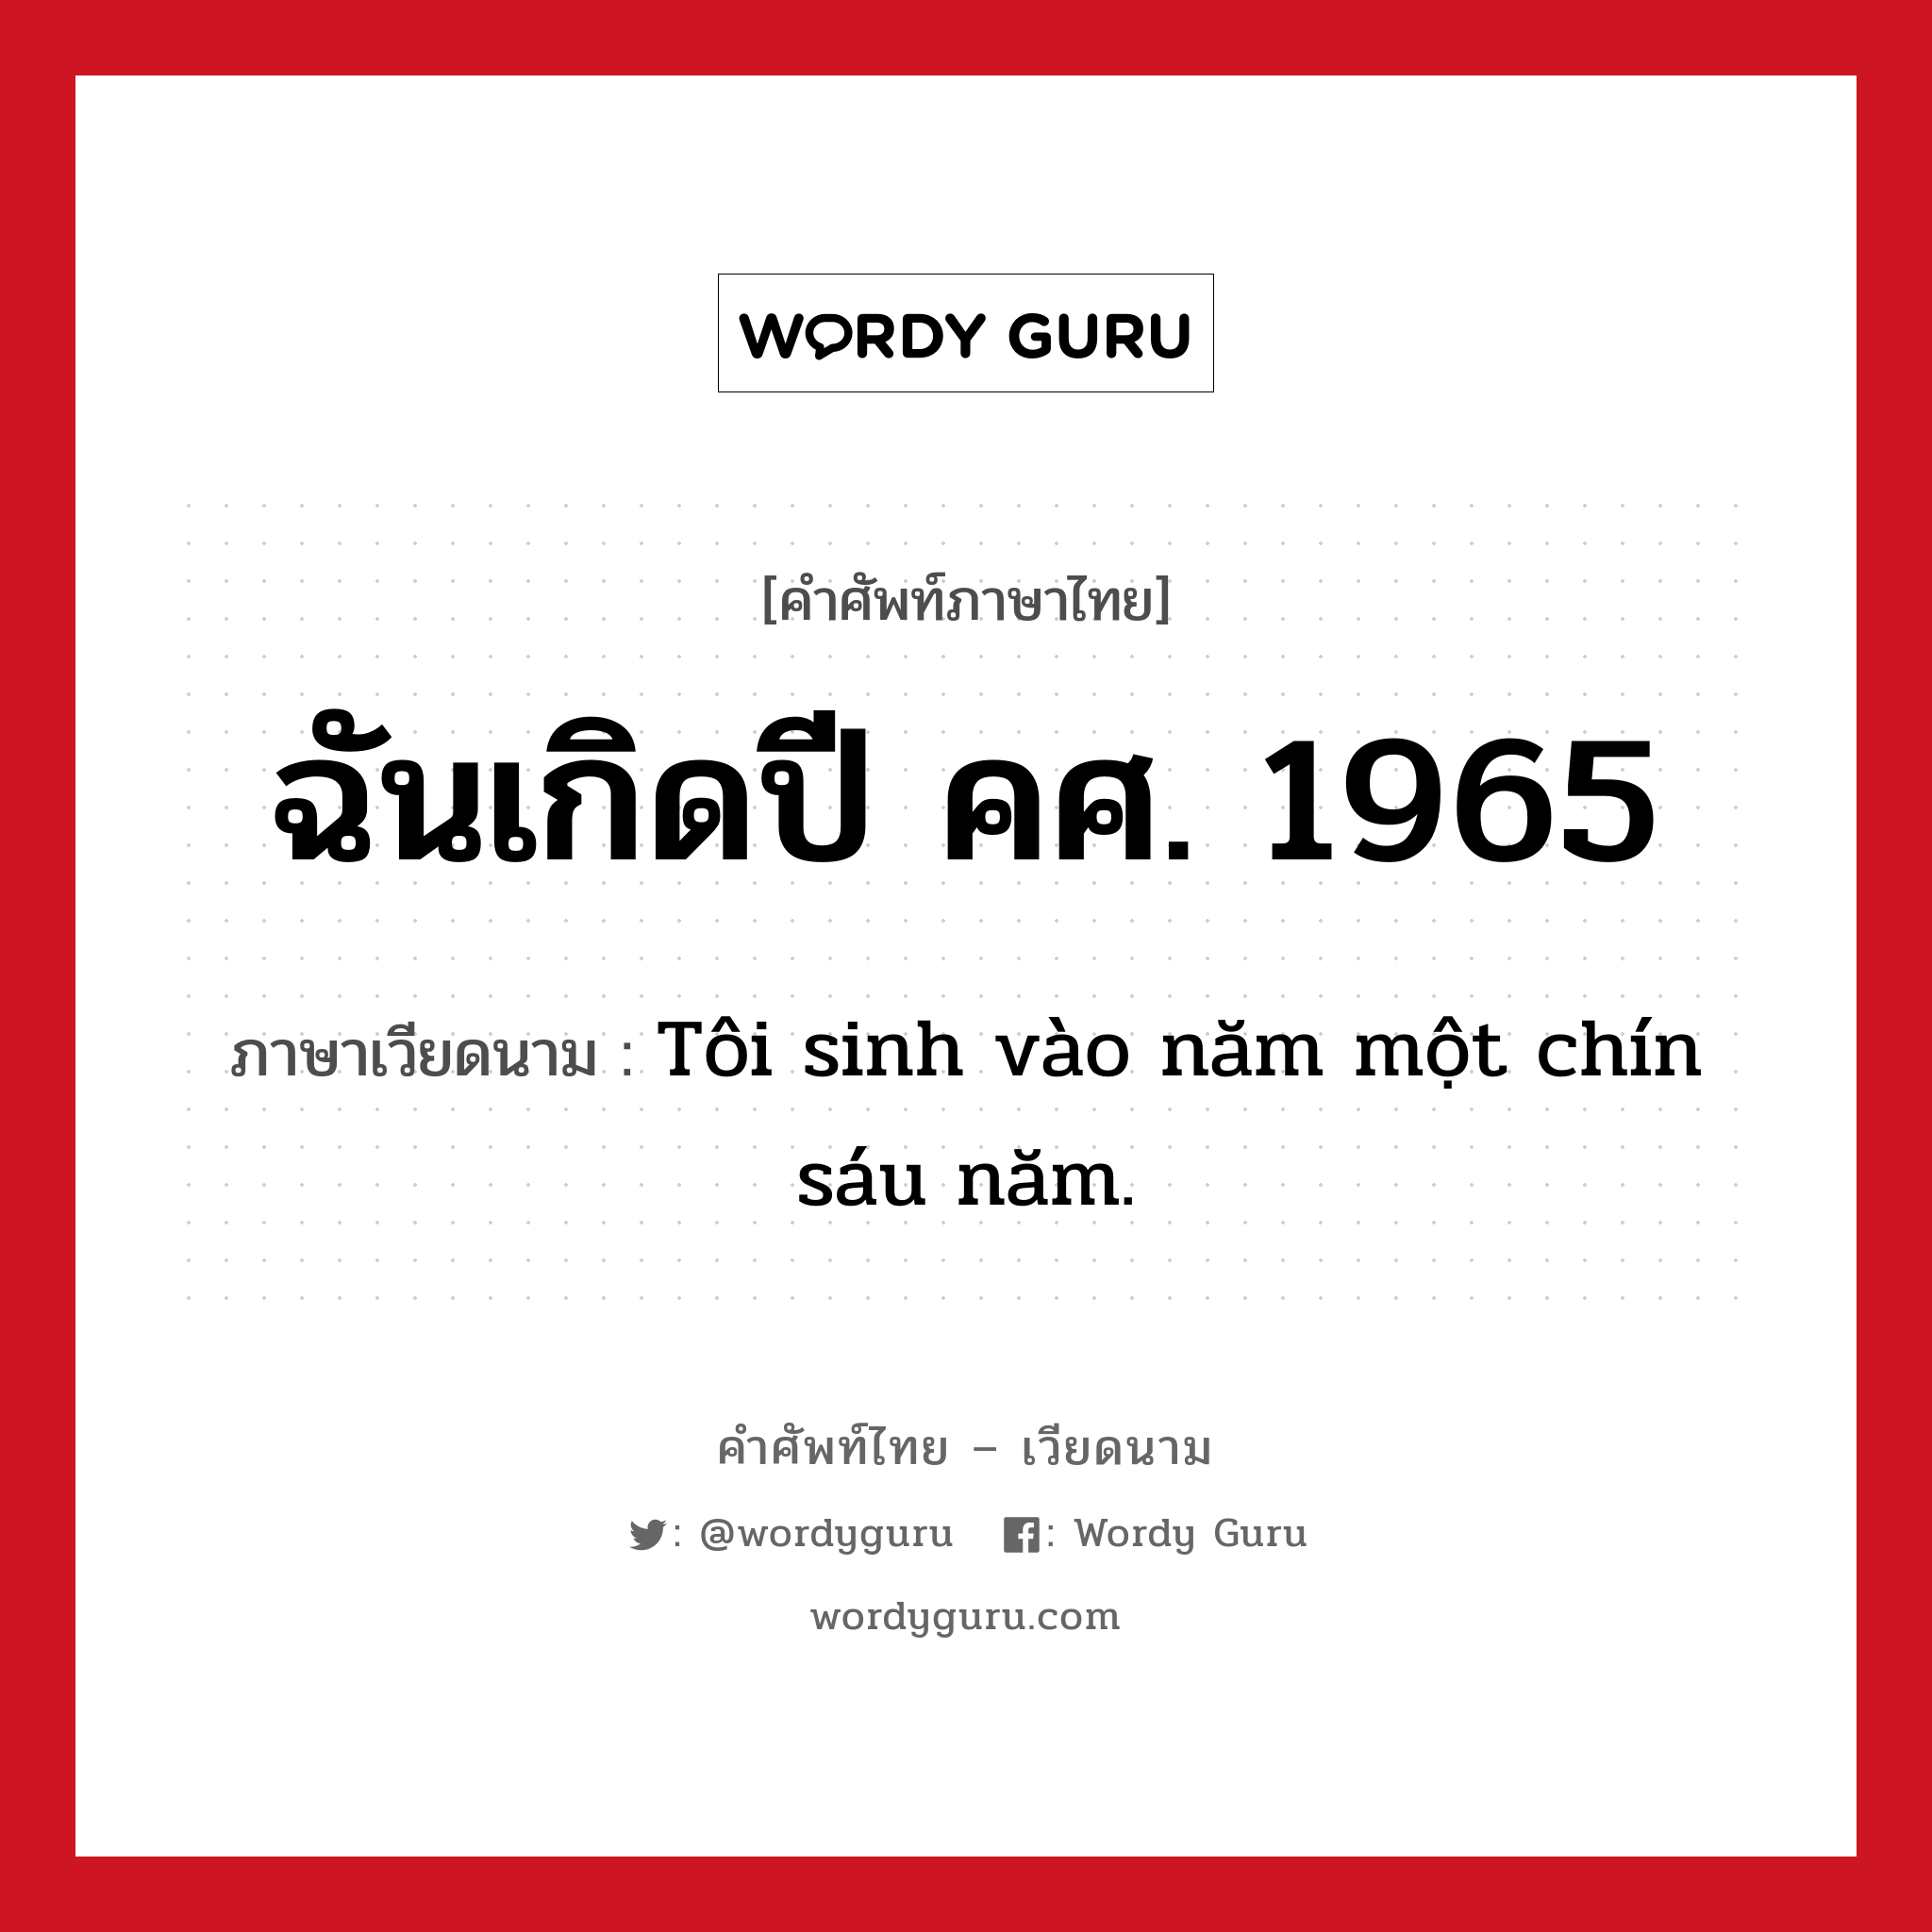 ฉันเกิดปี คศ. 1965 ภาษาเวียดนามคืออะไร, คำศัพท์ภาษาไทย - เวียดนาม ฉันเกิดปี คศ. 1965 ภาษาเวียดนาม Tôi sinh vào năm một chín sáu năm. หมวด การนับเลขและเวลา หมวด การนับเลขและเวลา